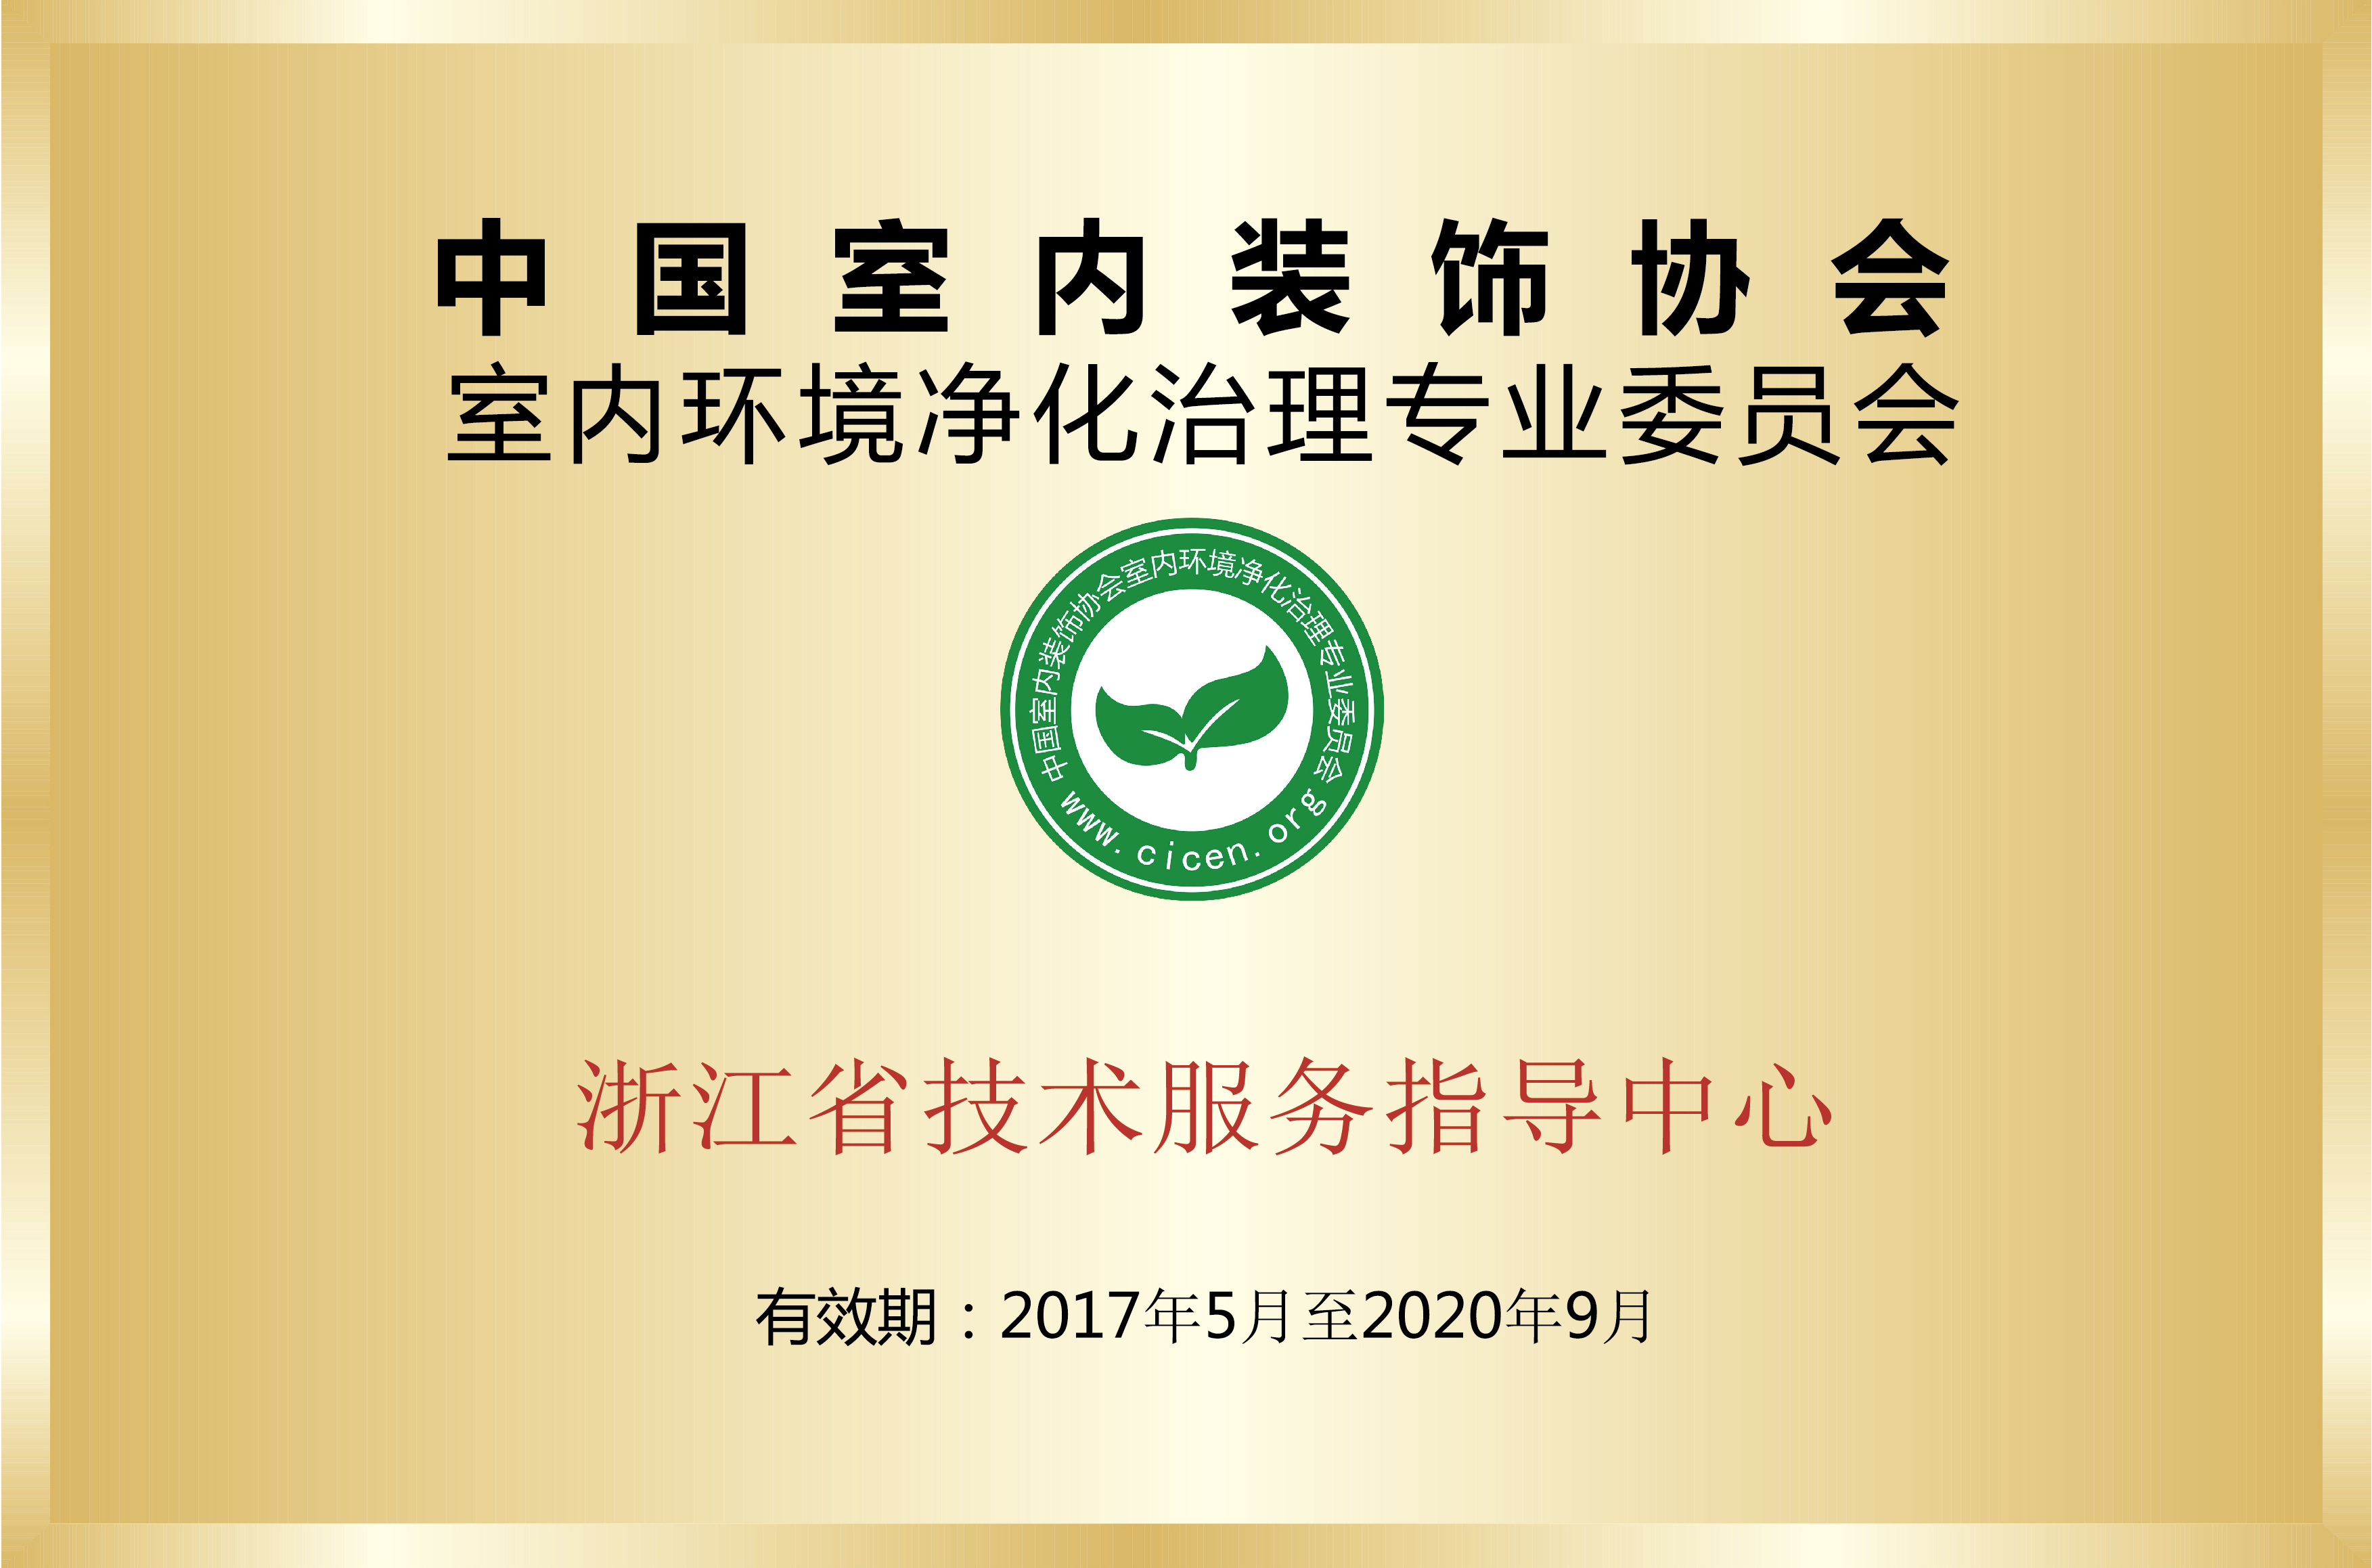 中國淨化委浙江省技術服務指導中心